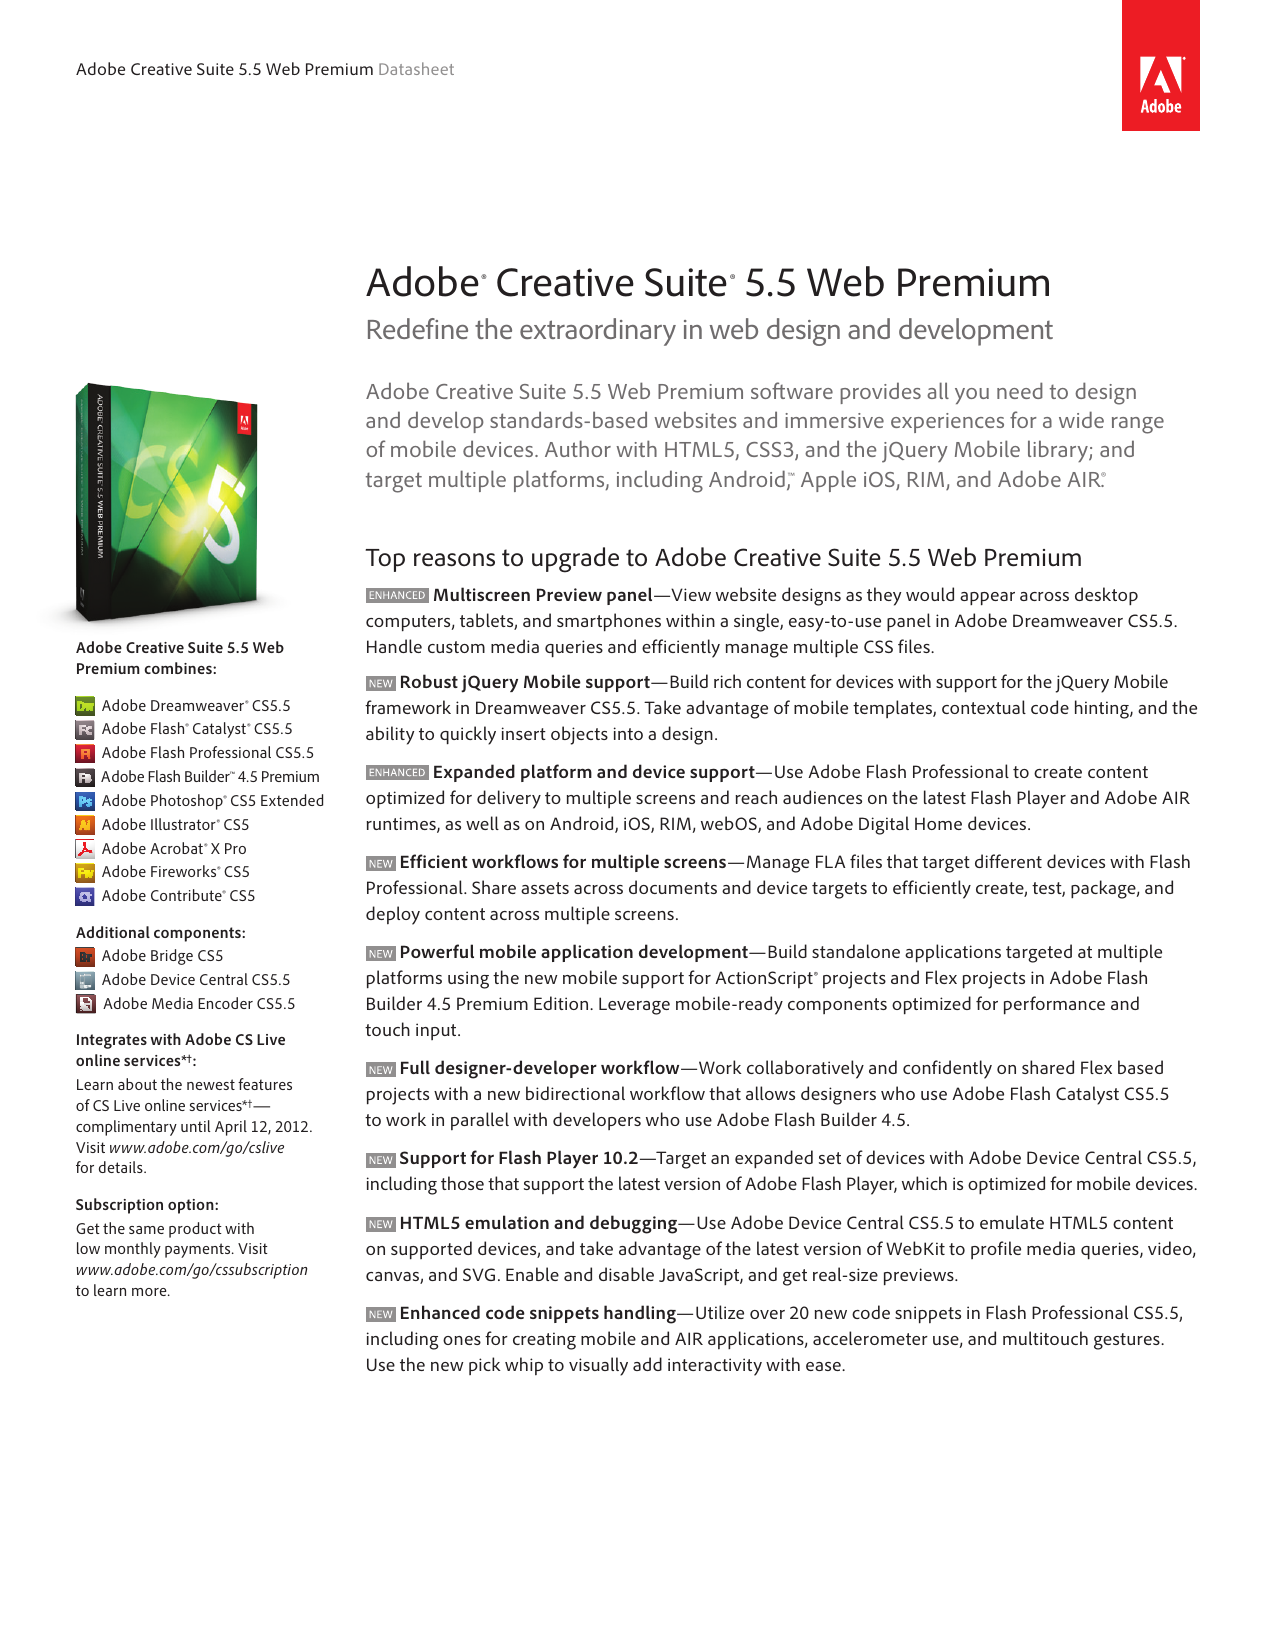 can you run adobe creative suite 5 design premium on a macbook pro